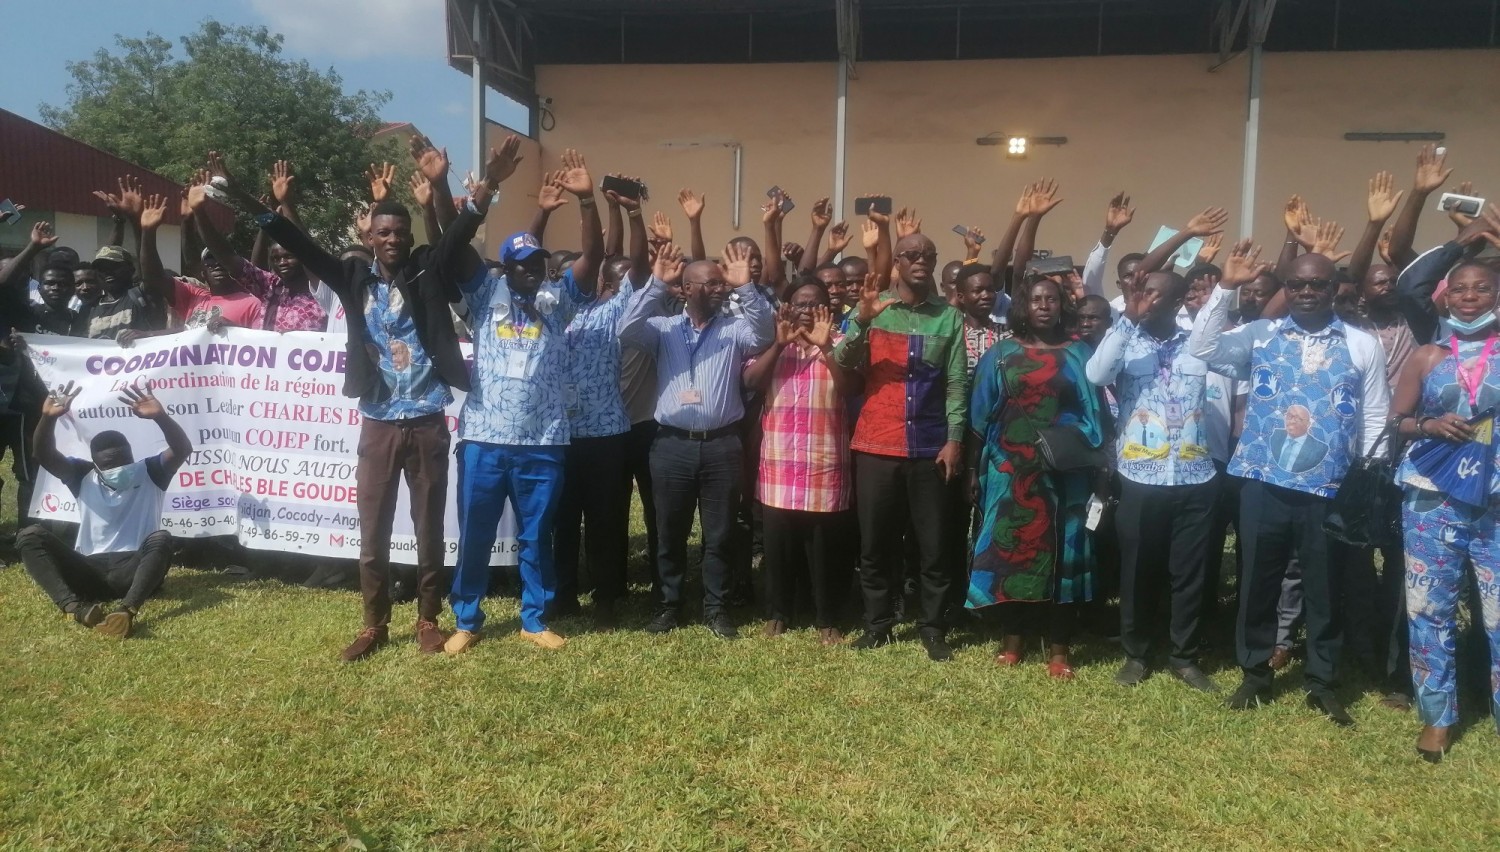 Côte d'Ivoire : Réunis à Bouaké, des partisans du COJEP reçoivent une feuille de route de leur leader Charles Blé Goudé